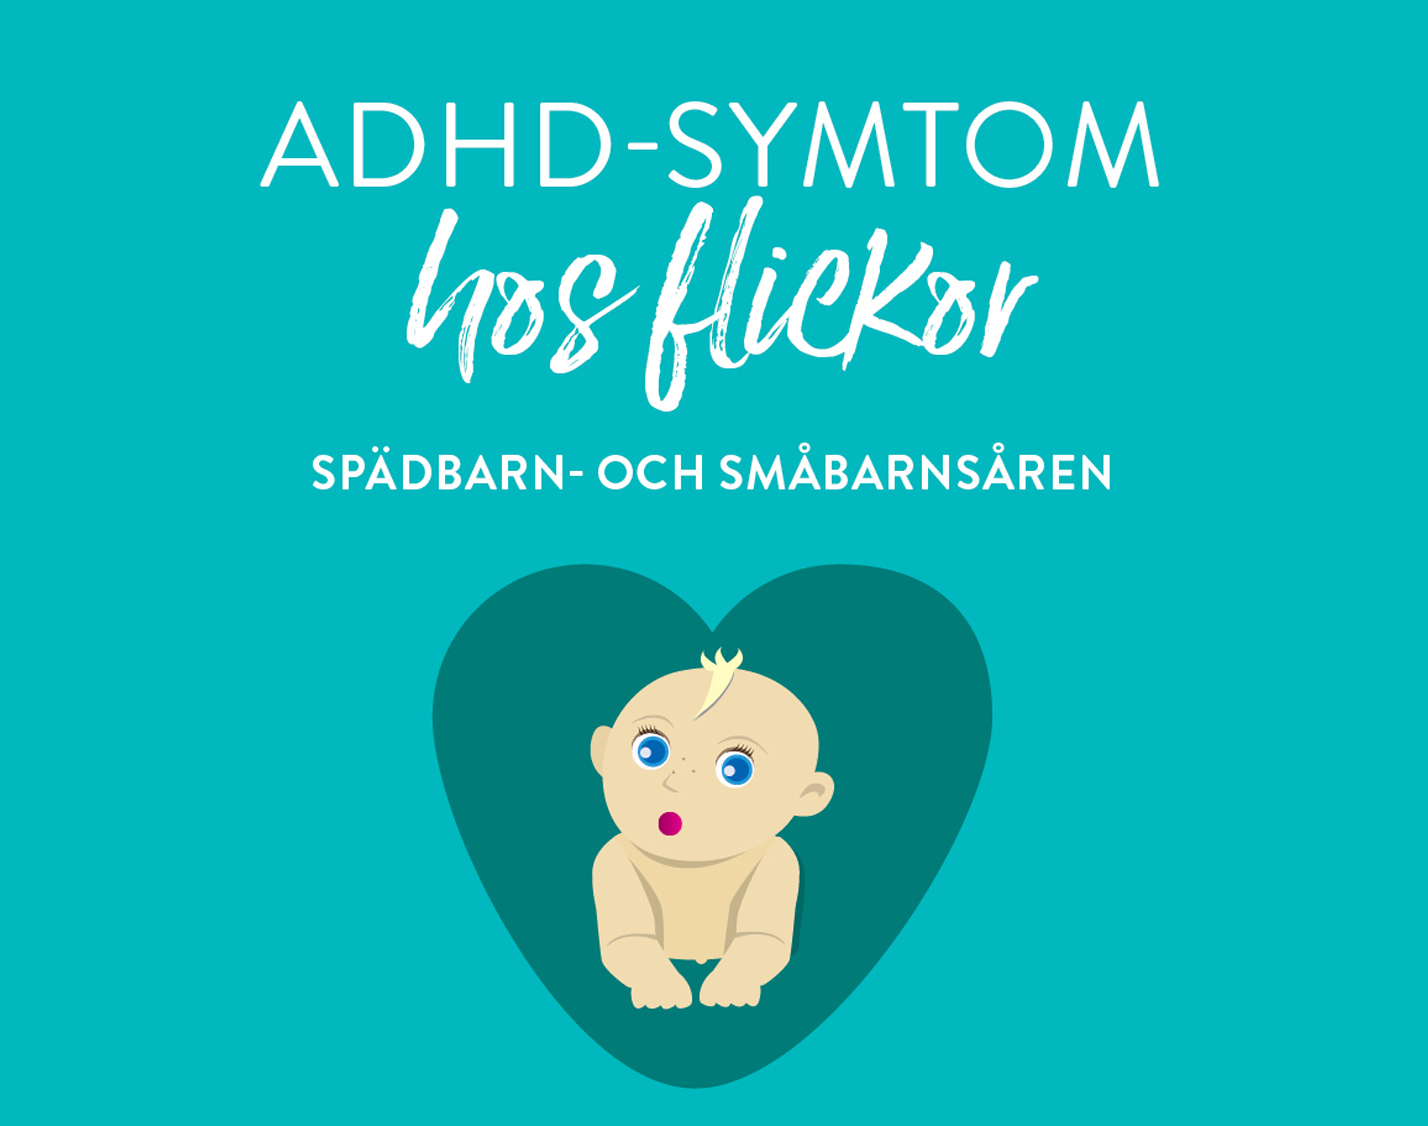 ADHD-symtom för flickor i spädbarns- och småbarnsåldern